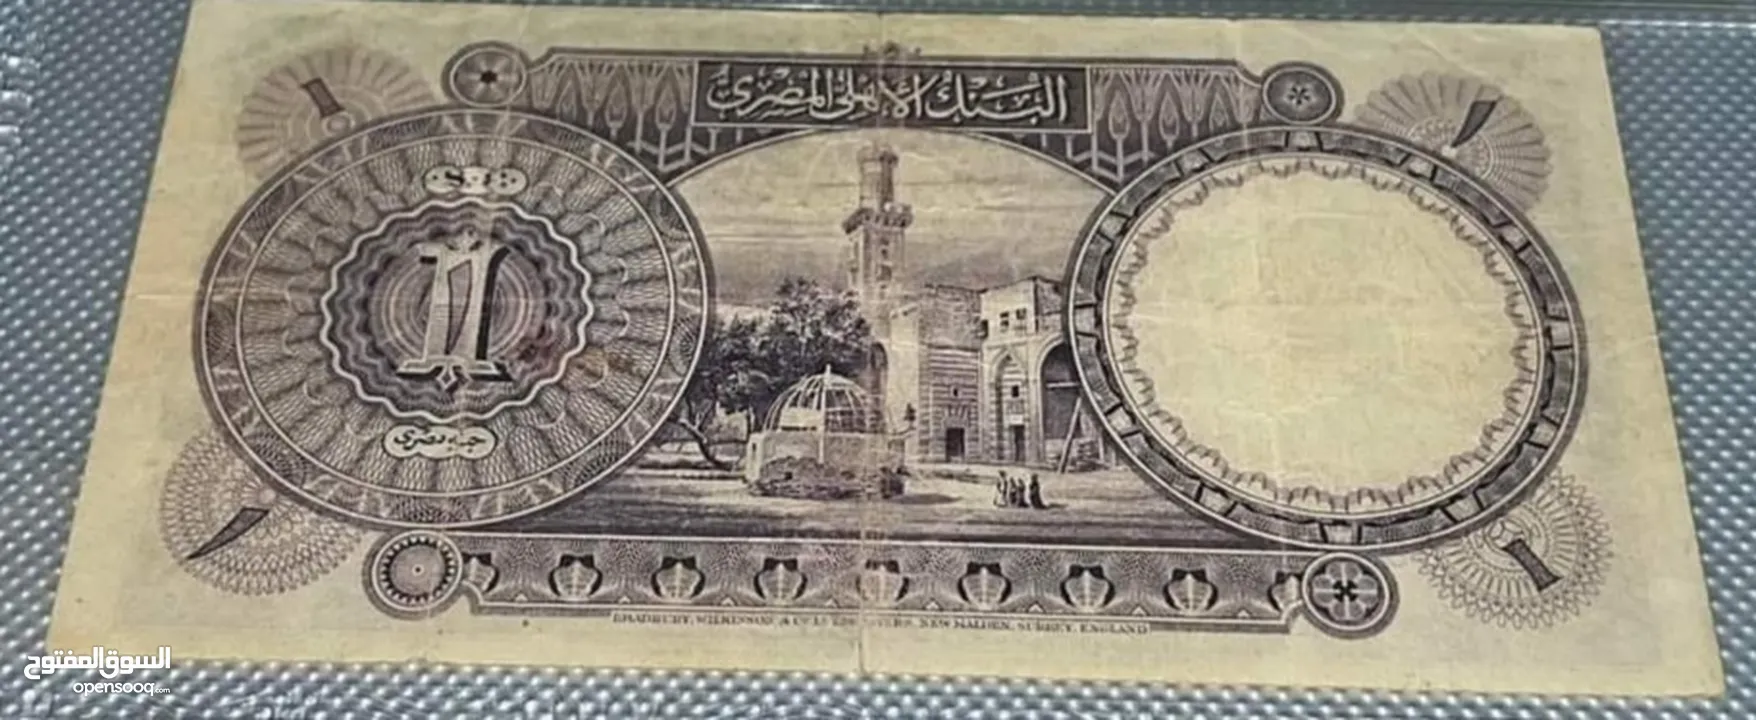 عملات مصرية قديمة ونادرة للبيع